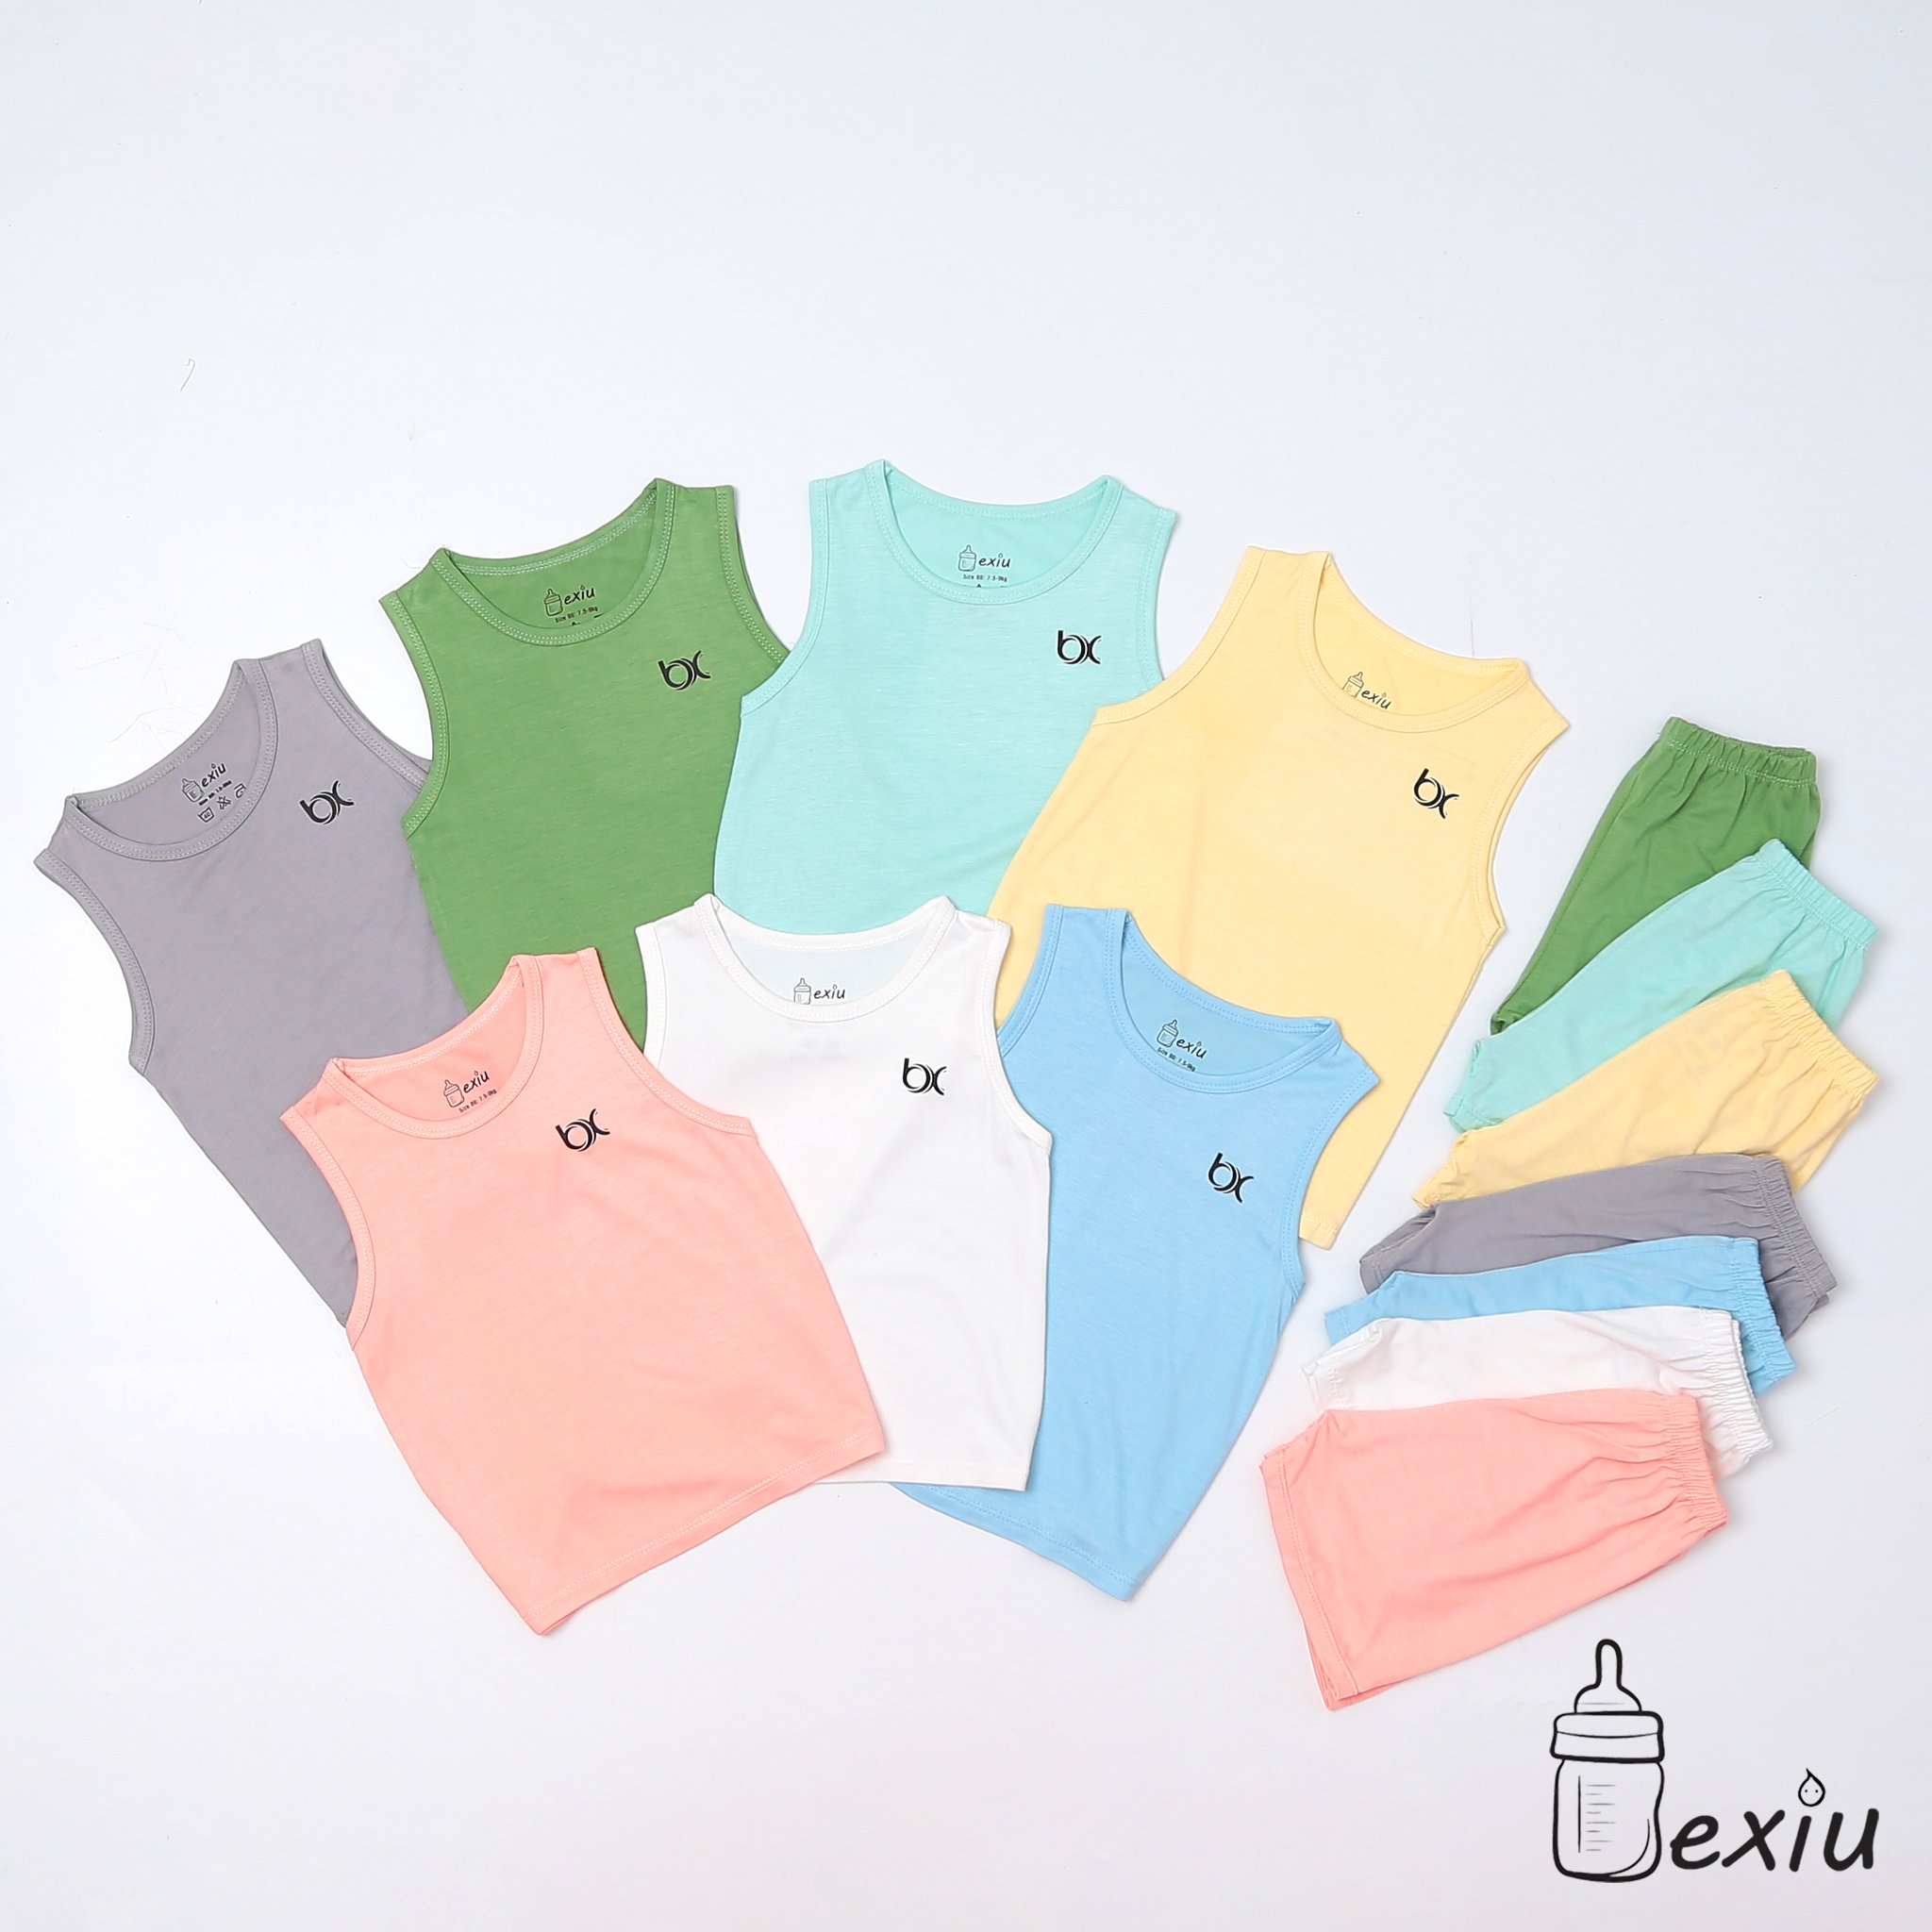 HCMBộ ba lỗ màu Bexiu bx - Quần áo trẻ sơ sinh vải cotton lạnh mát mềm thumbnail